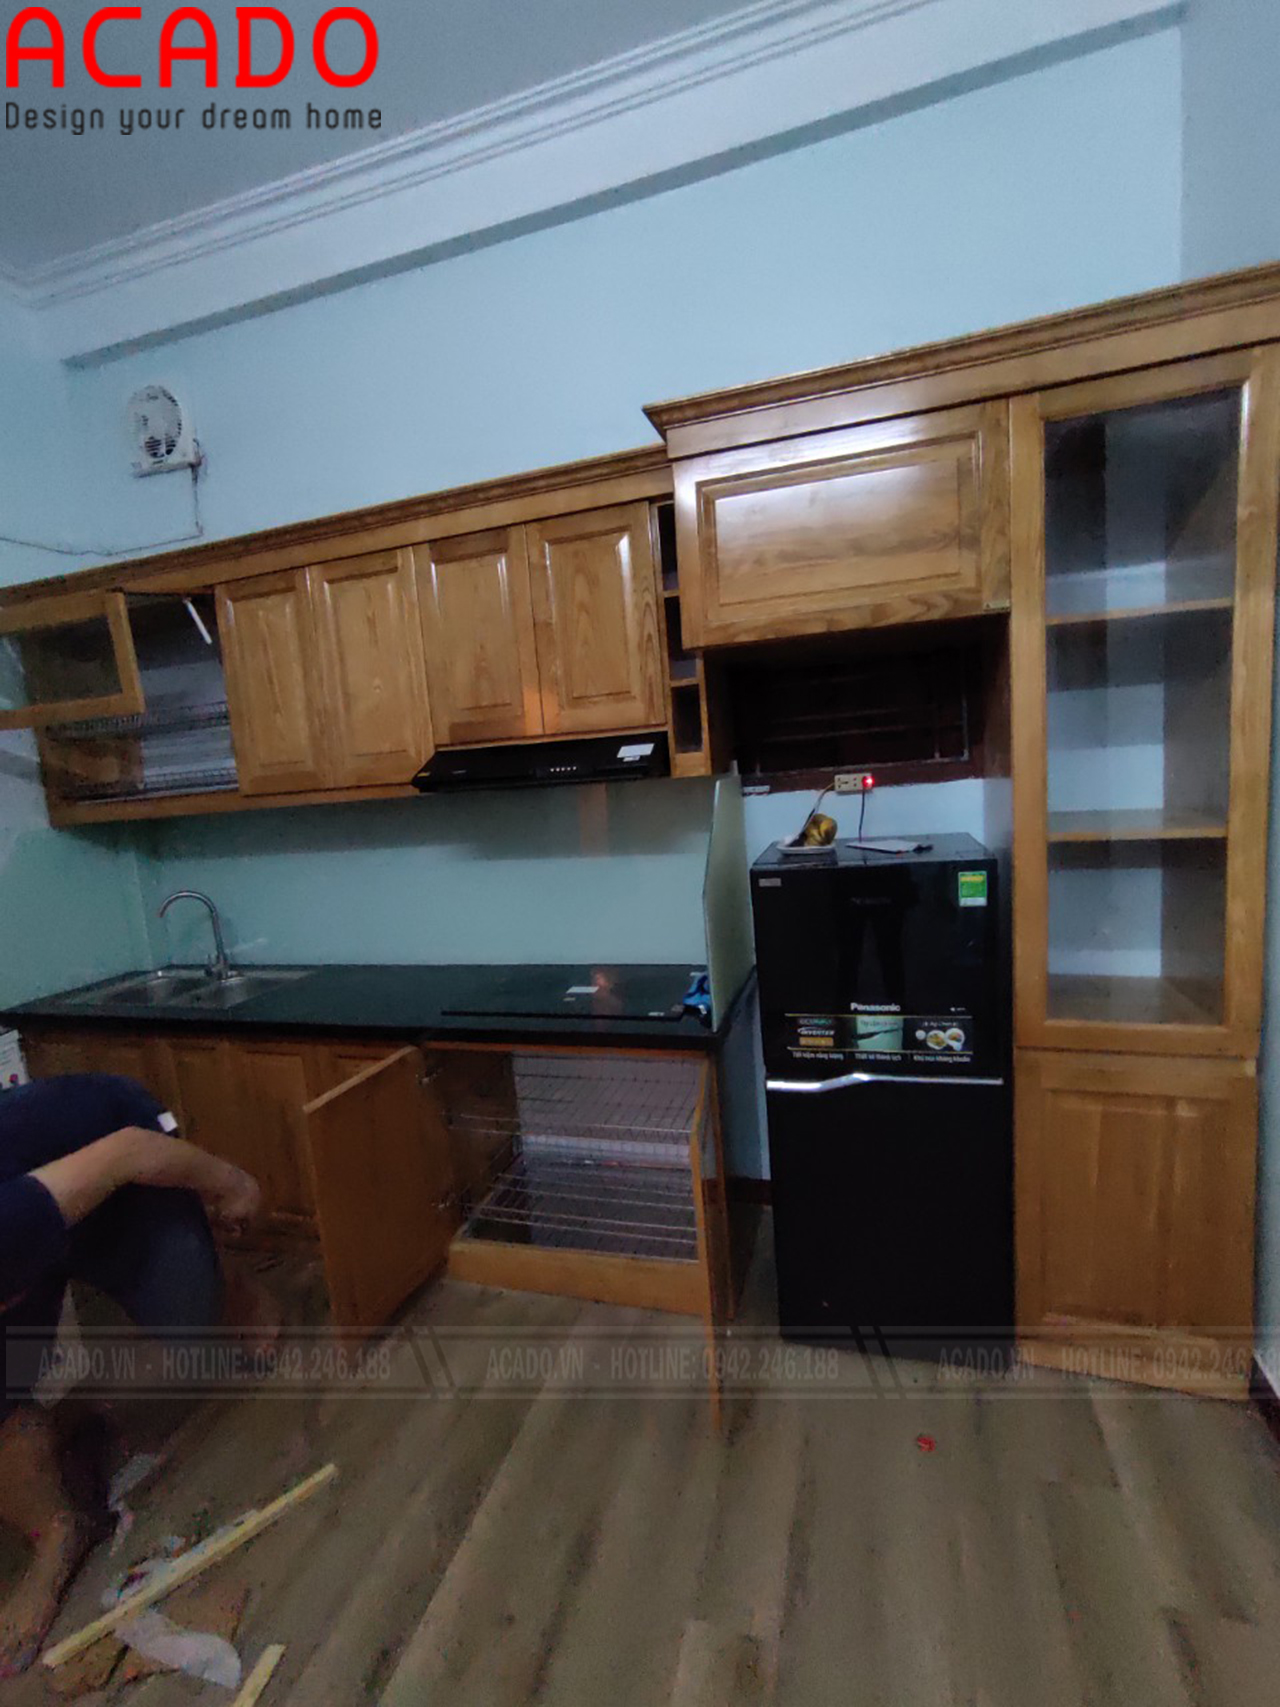 Thợ thi công hoàn thiện lắp đặt tủ bếp cho gia đình chị Hà